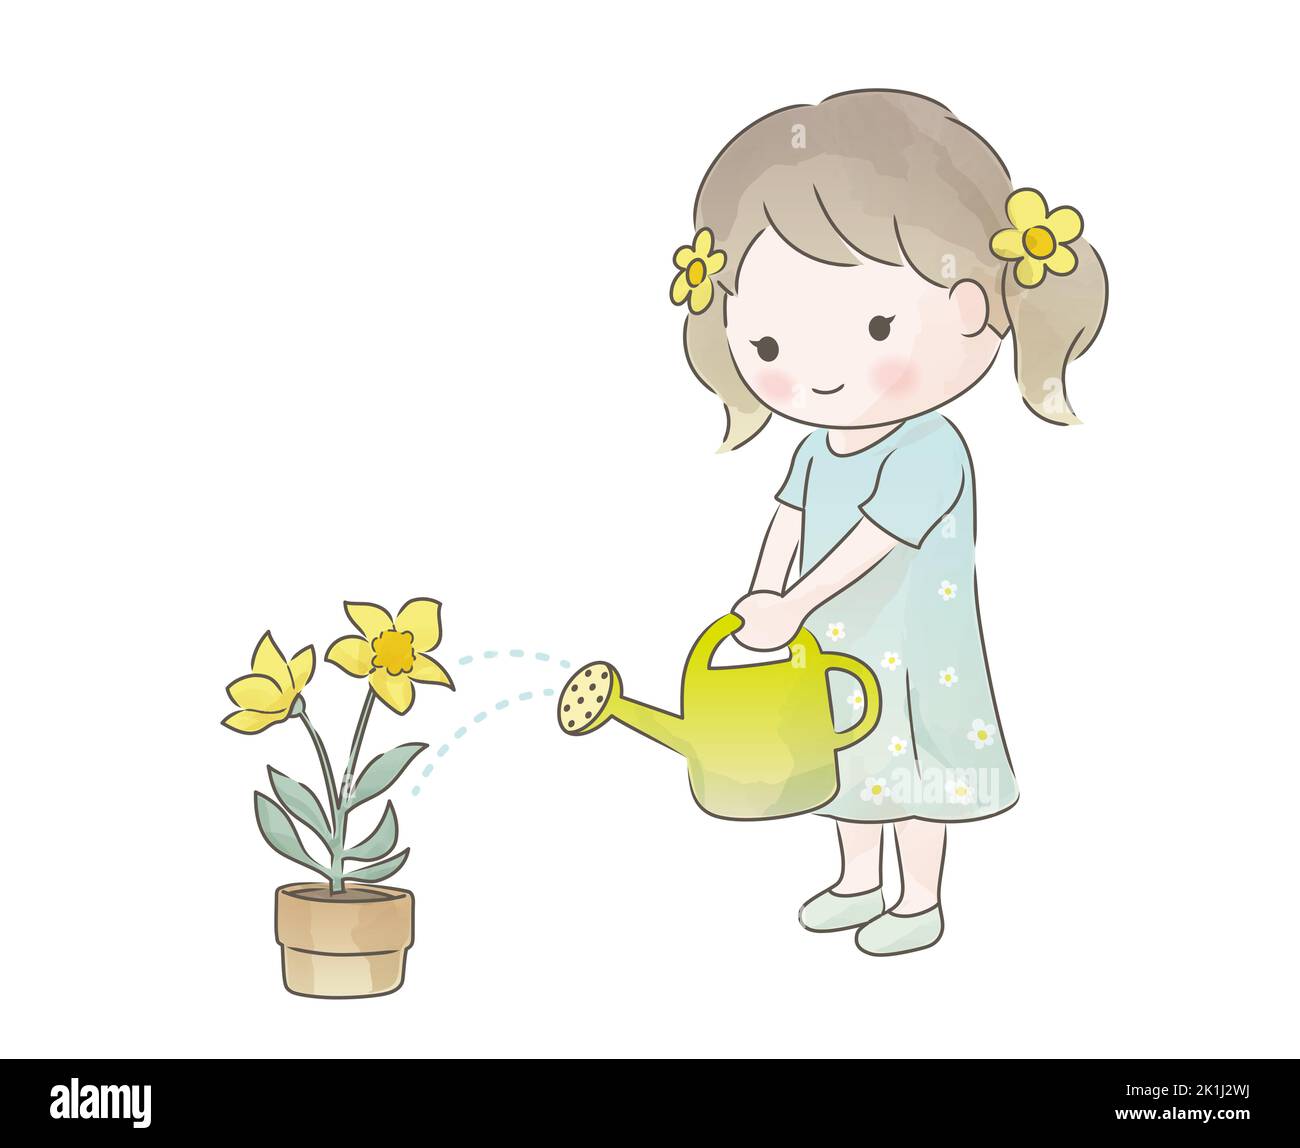 Une jolie fille arrosoir plantes en pot. Illustration vectorielle naïve d'aquarelle isolée sur Un fond blanc. Illustration de Vecteur